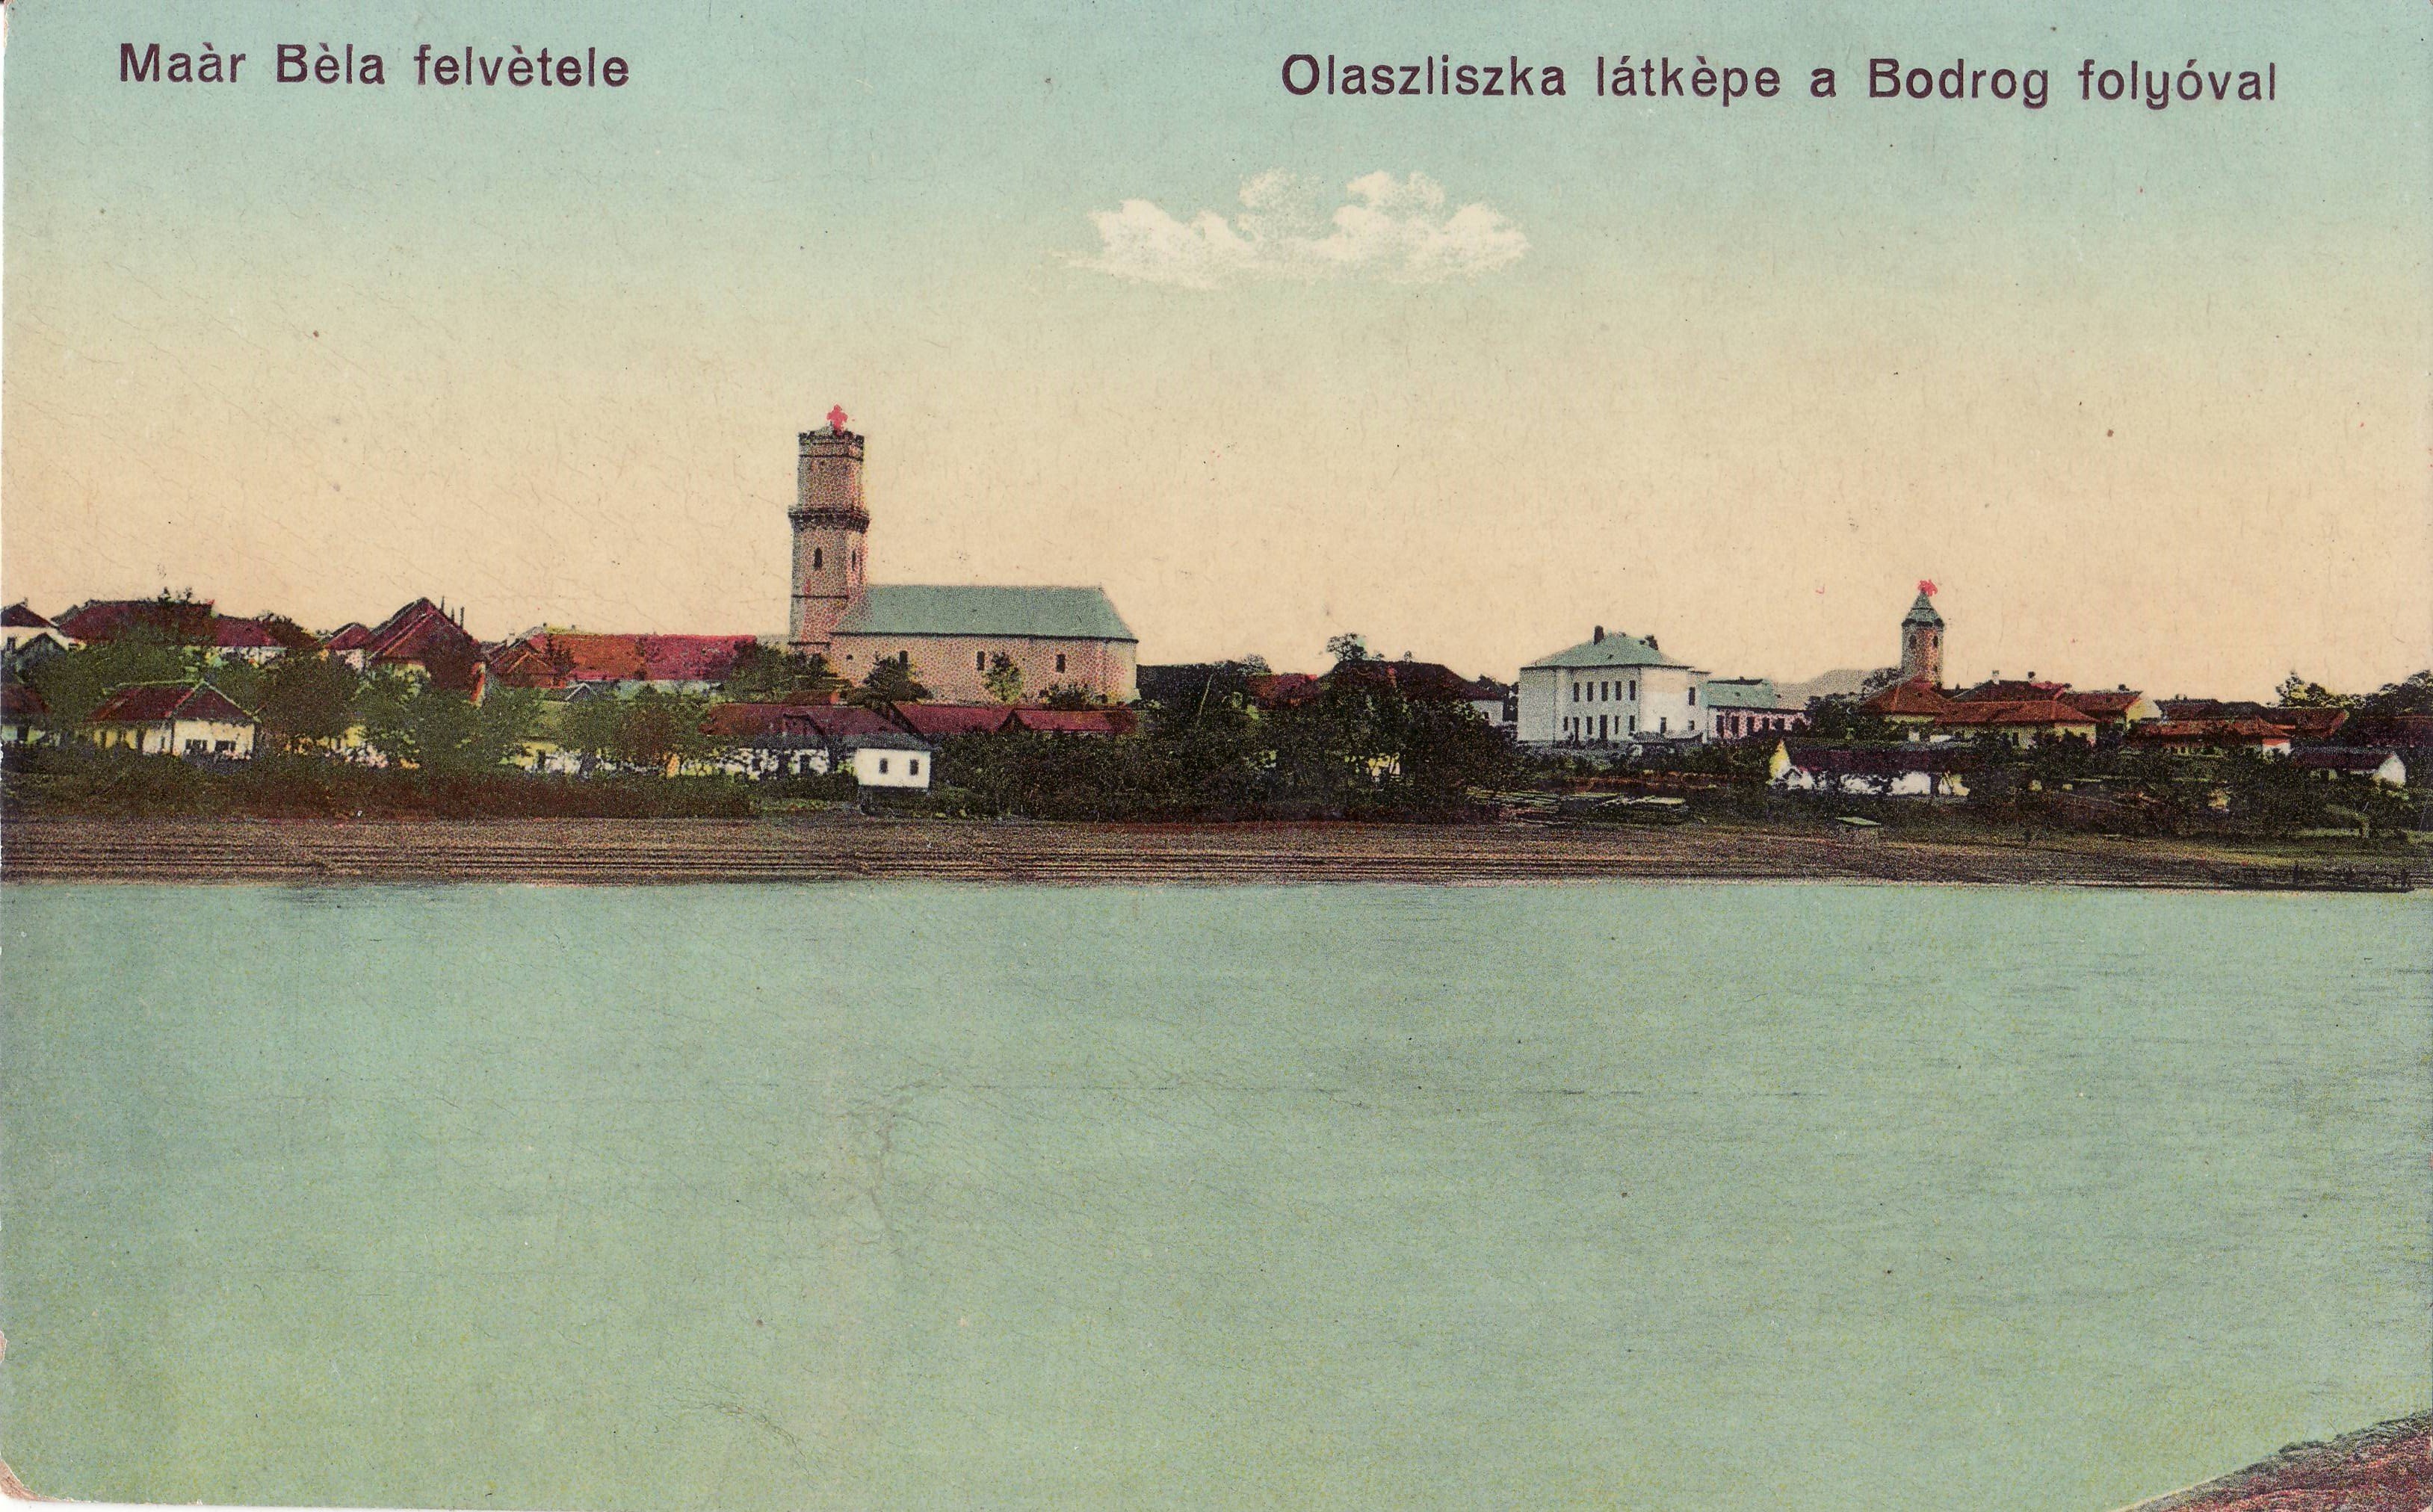 Olaszliszka látképe a Bodrog folyóval – Maár Béla felvétele (Magyar Környezetvédelmi és Vízügyi Múzeum - Duna Múzeum CC BY-NC-SA)